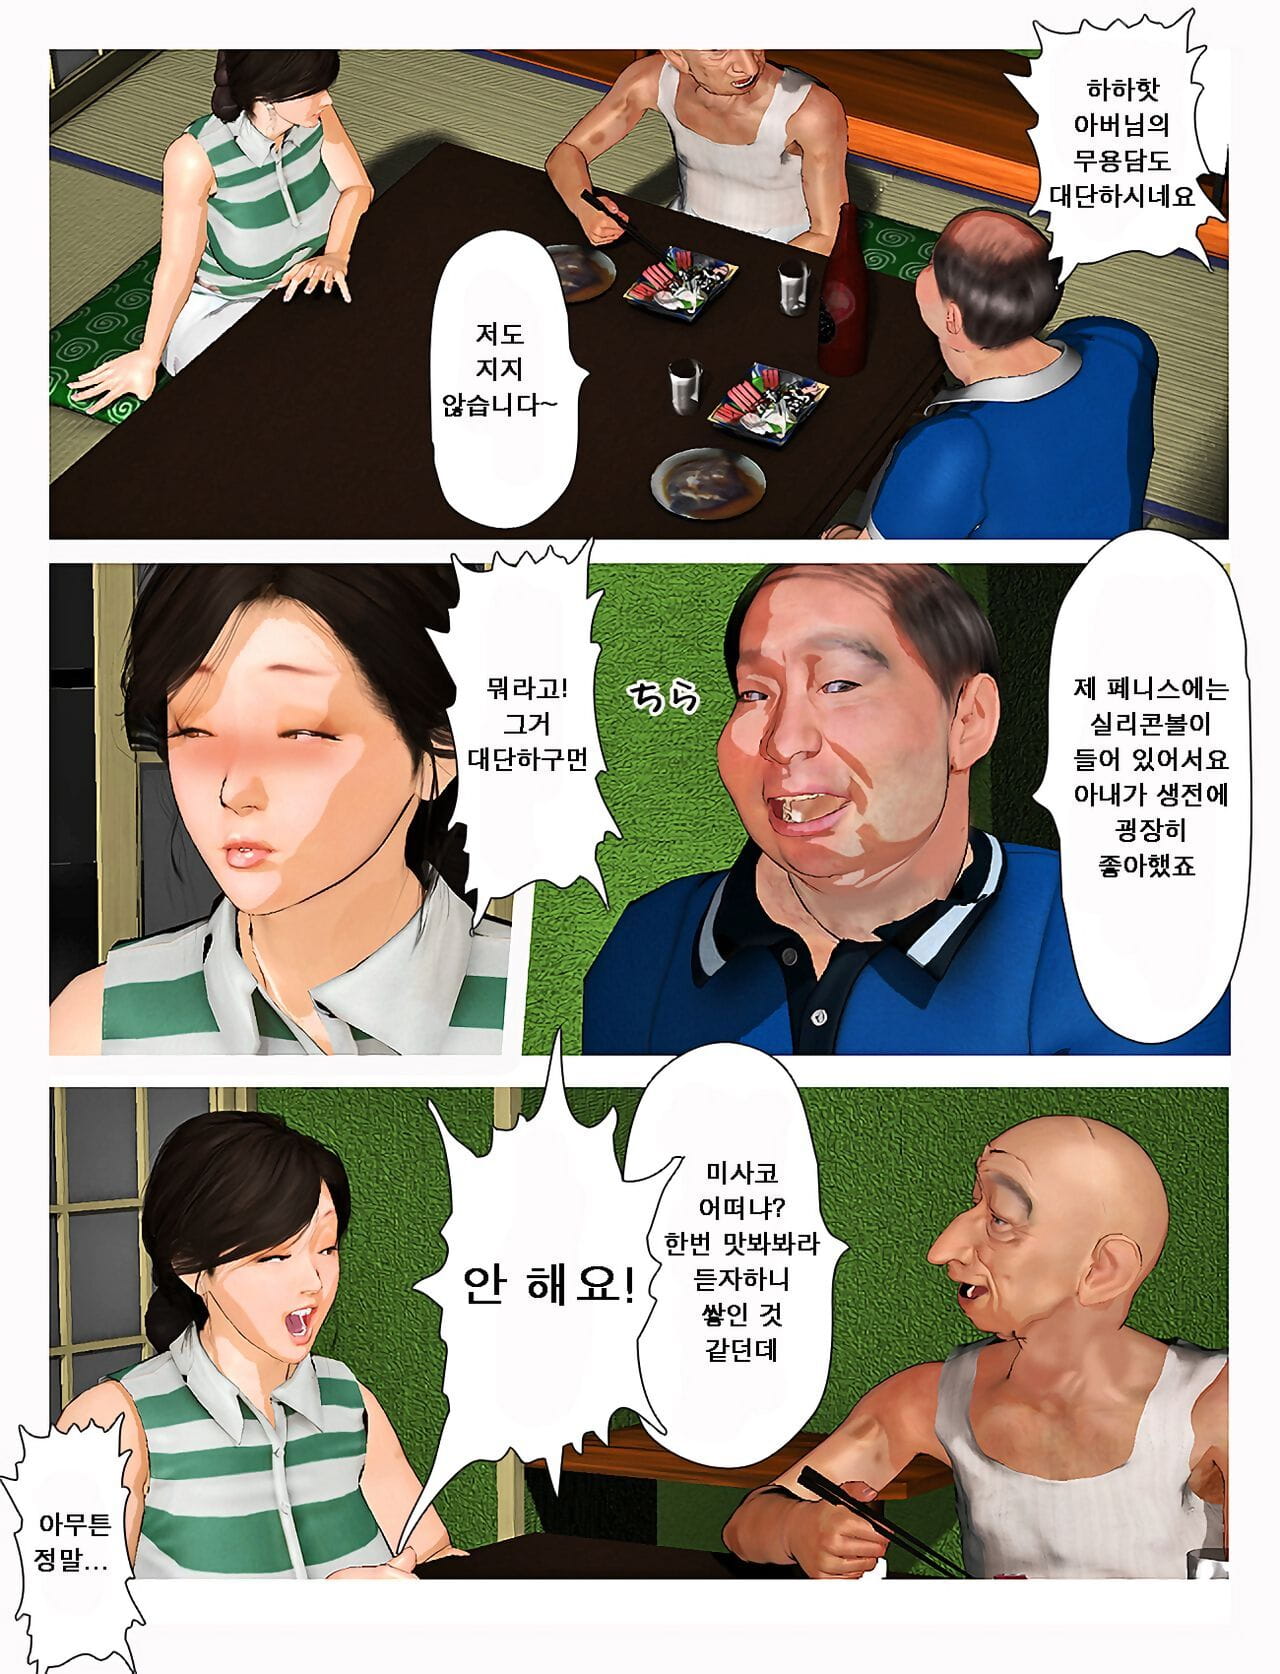 Kyou no misako san 2019:2 오늘의 미사코씨 2019:2 page 1